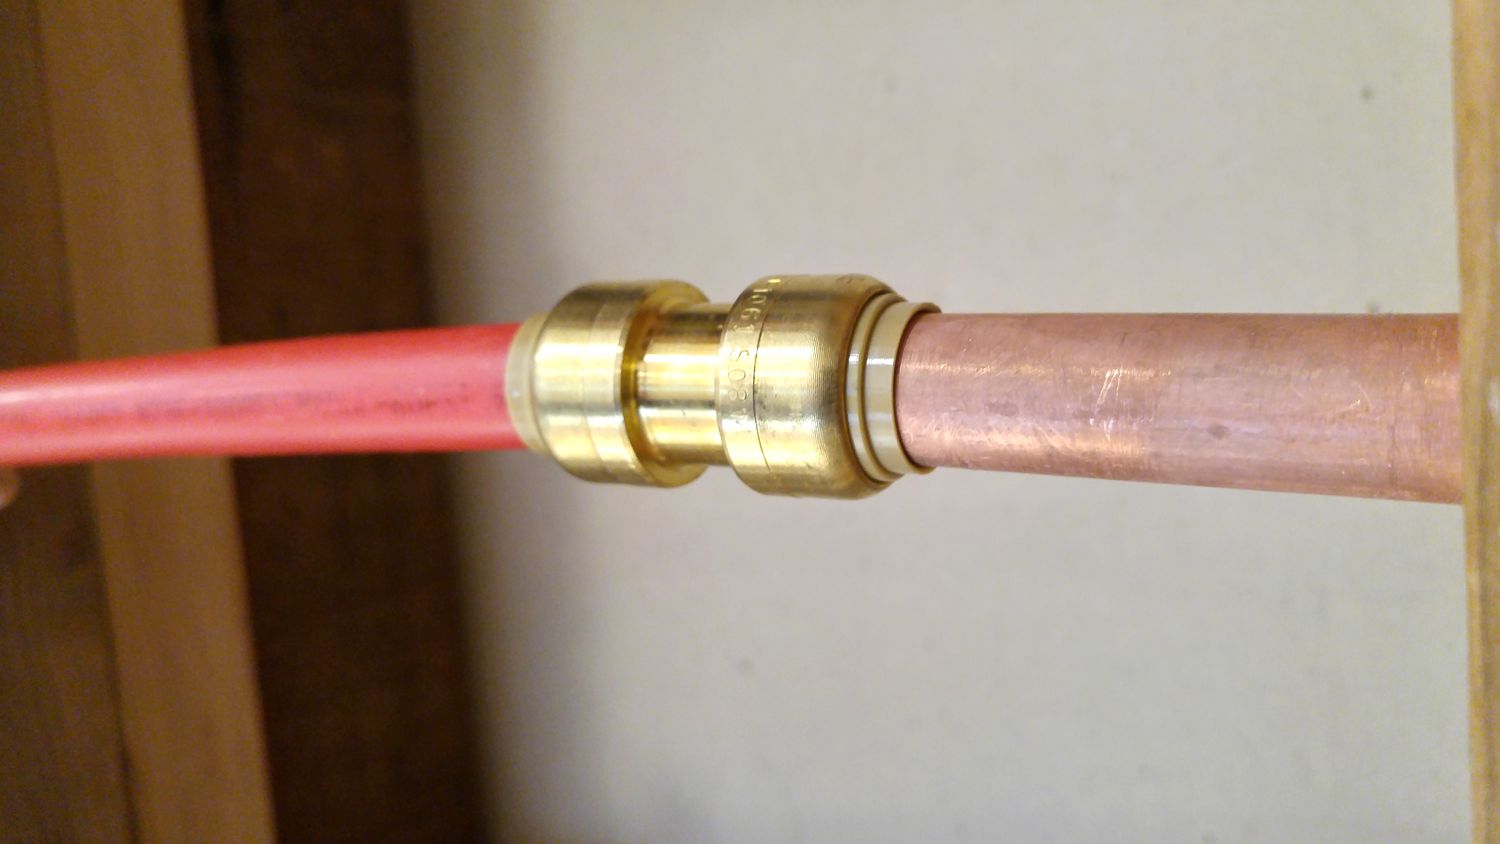 Comment remplacer un tuyau de cuivre par du PEX